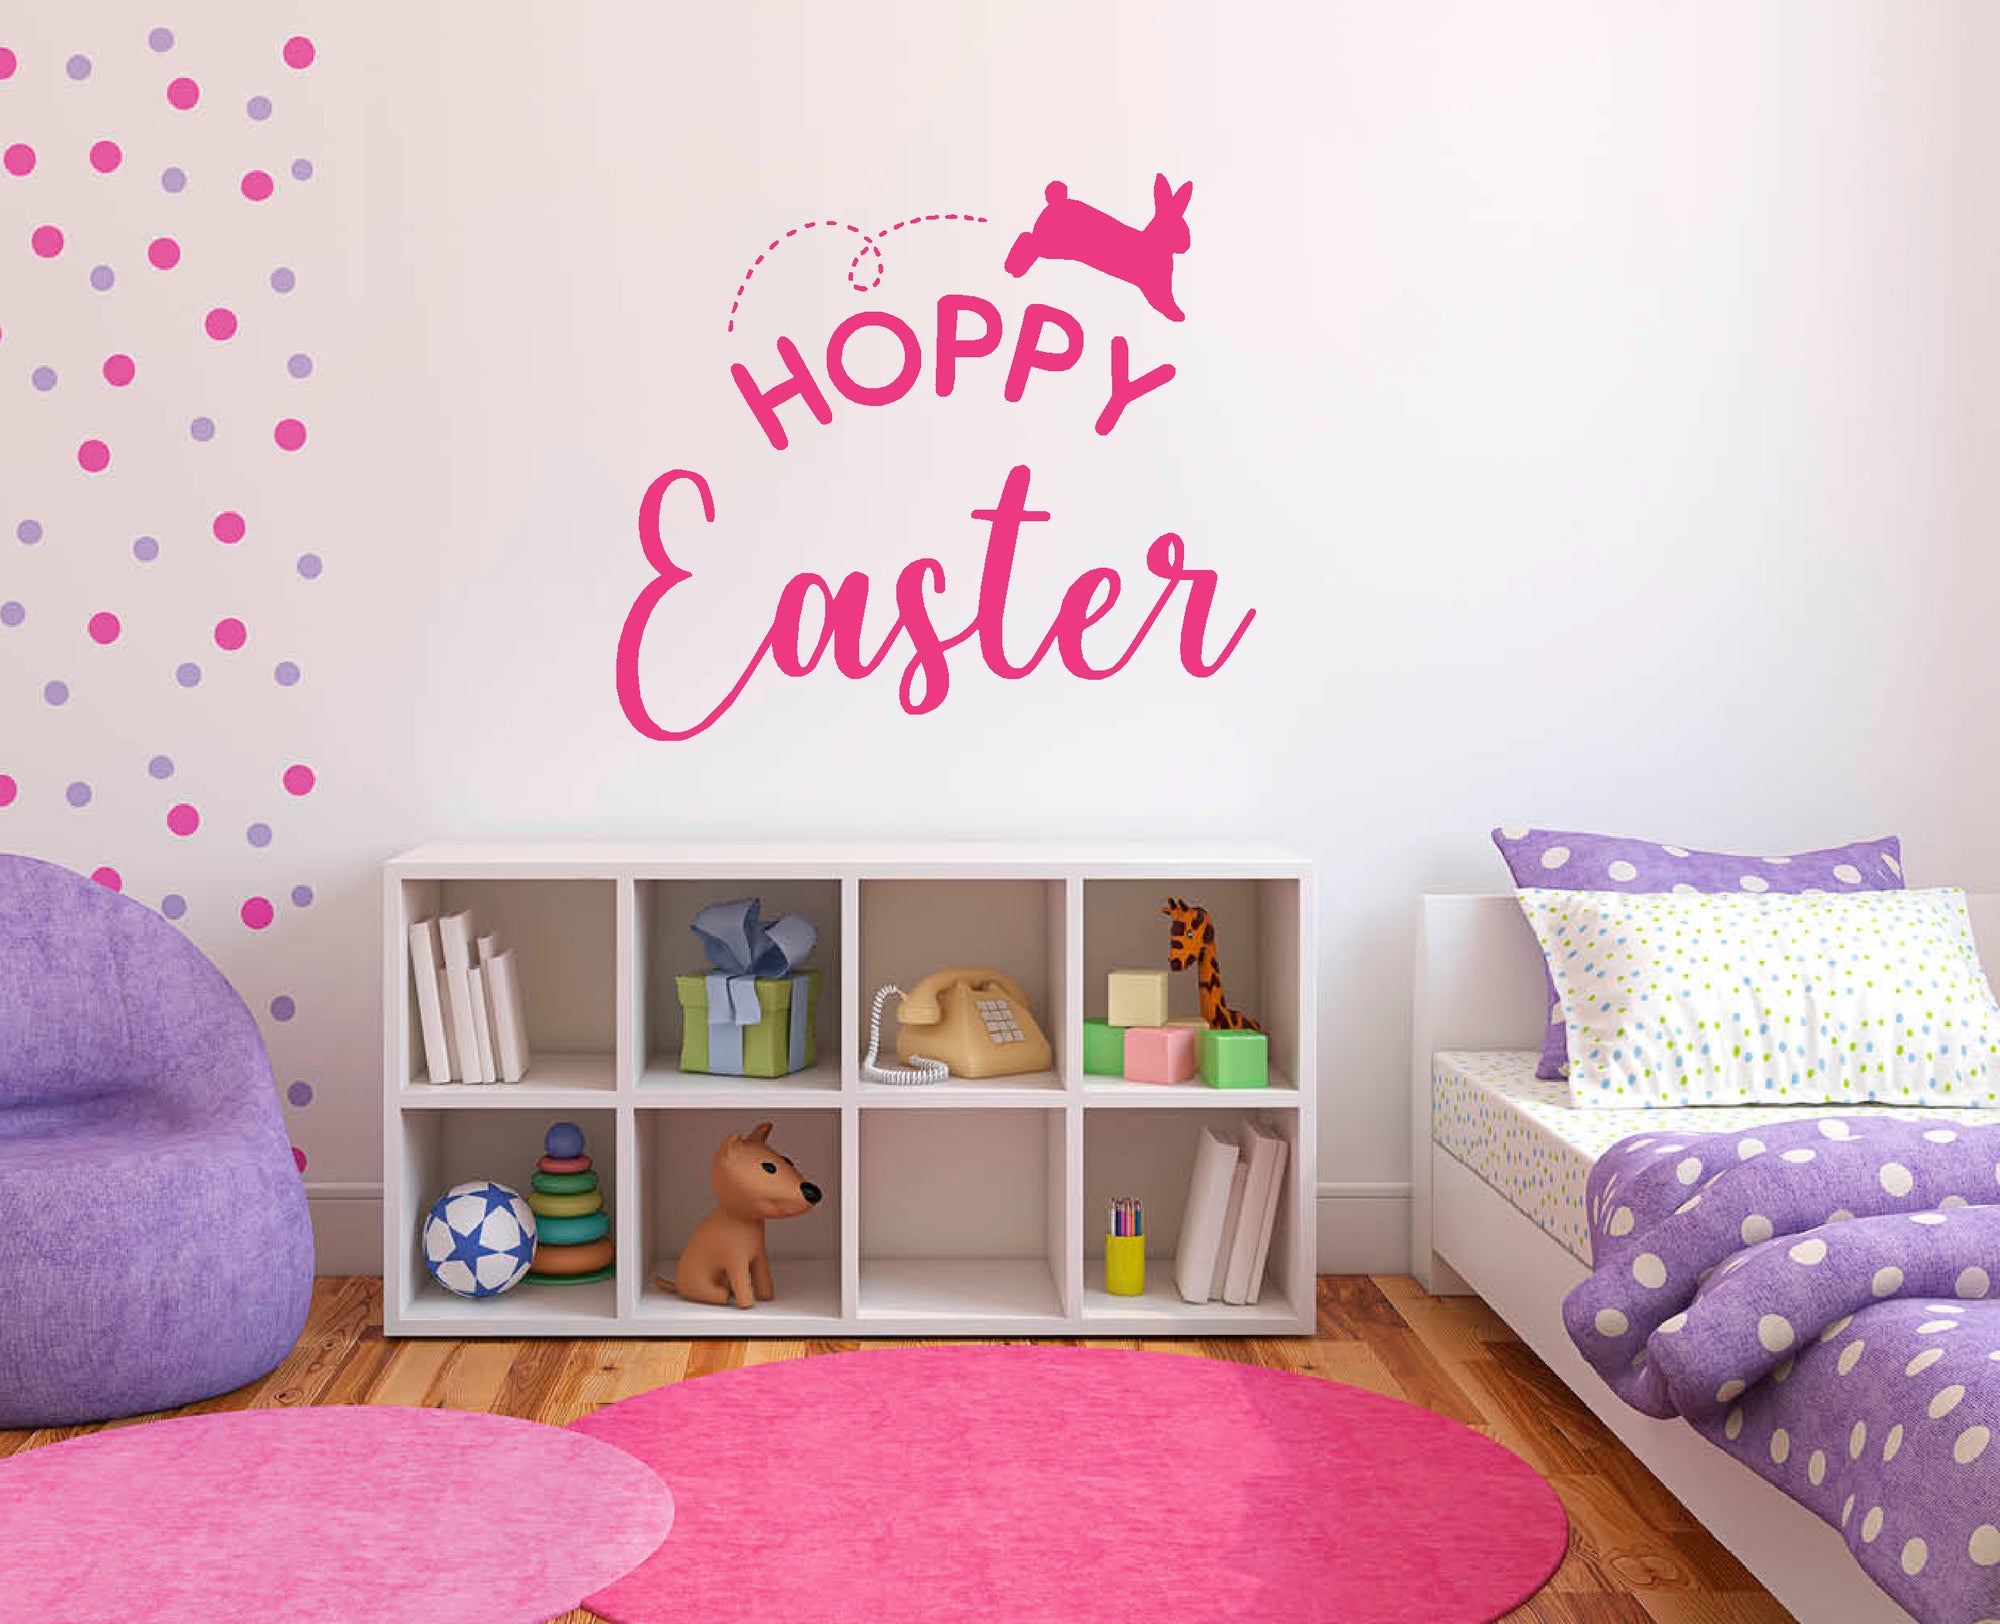 Hoppy Easter with bunny hopping vinyl sticker